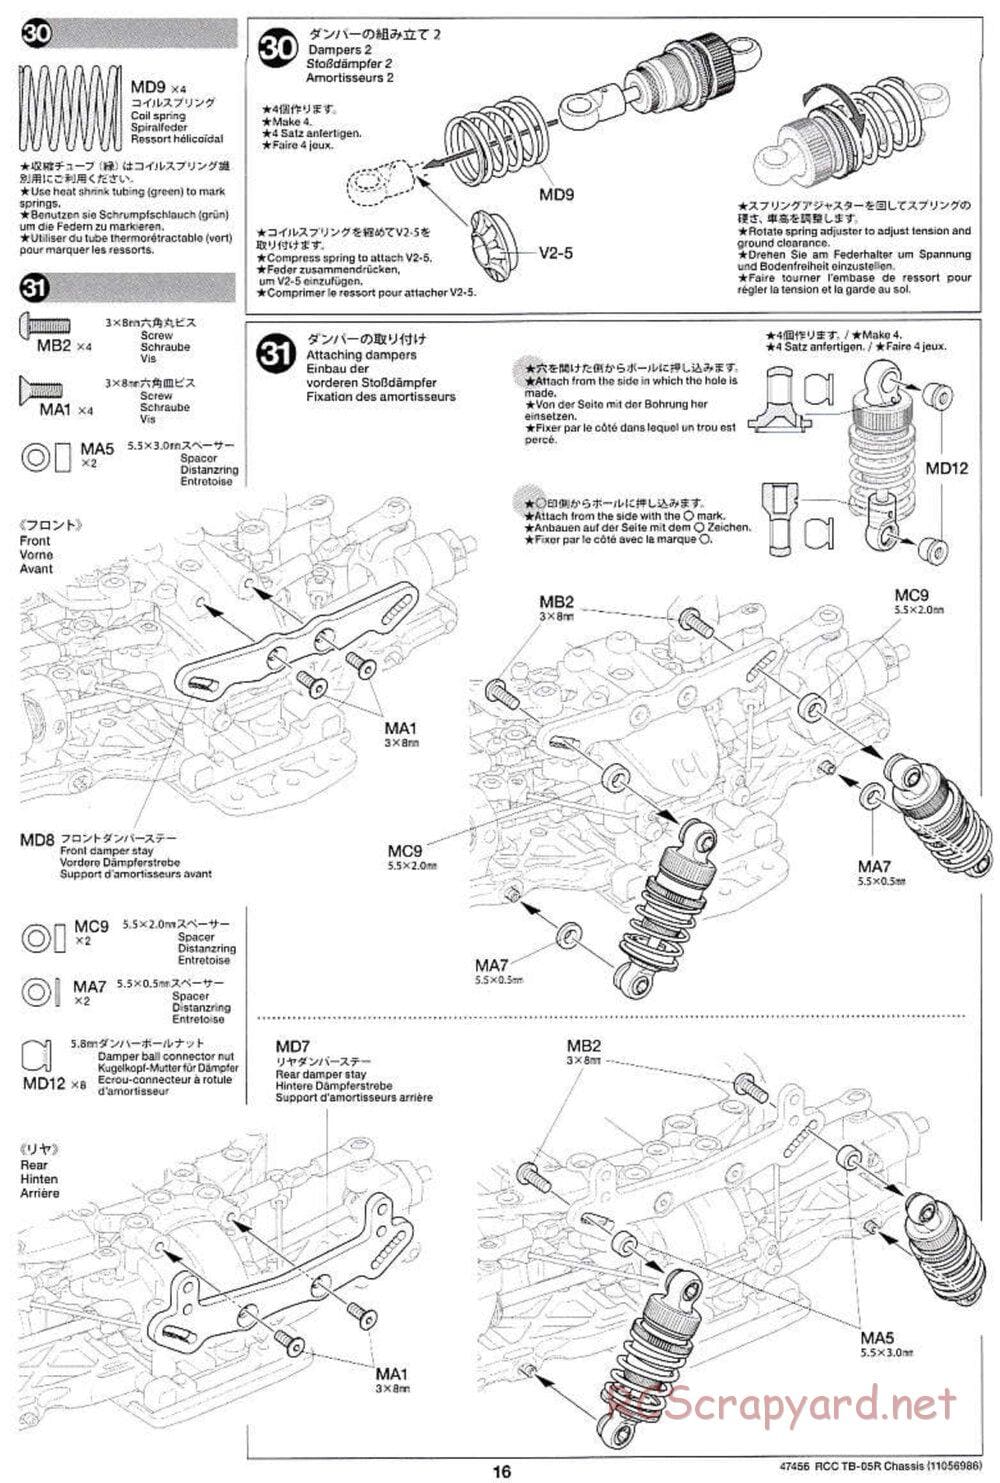 Tamiya - TB-05R Chassis - Manual - Page 16